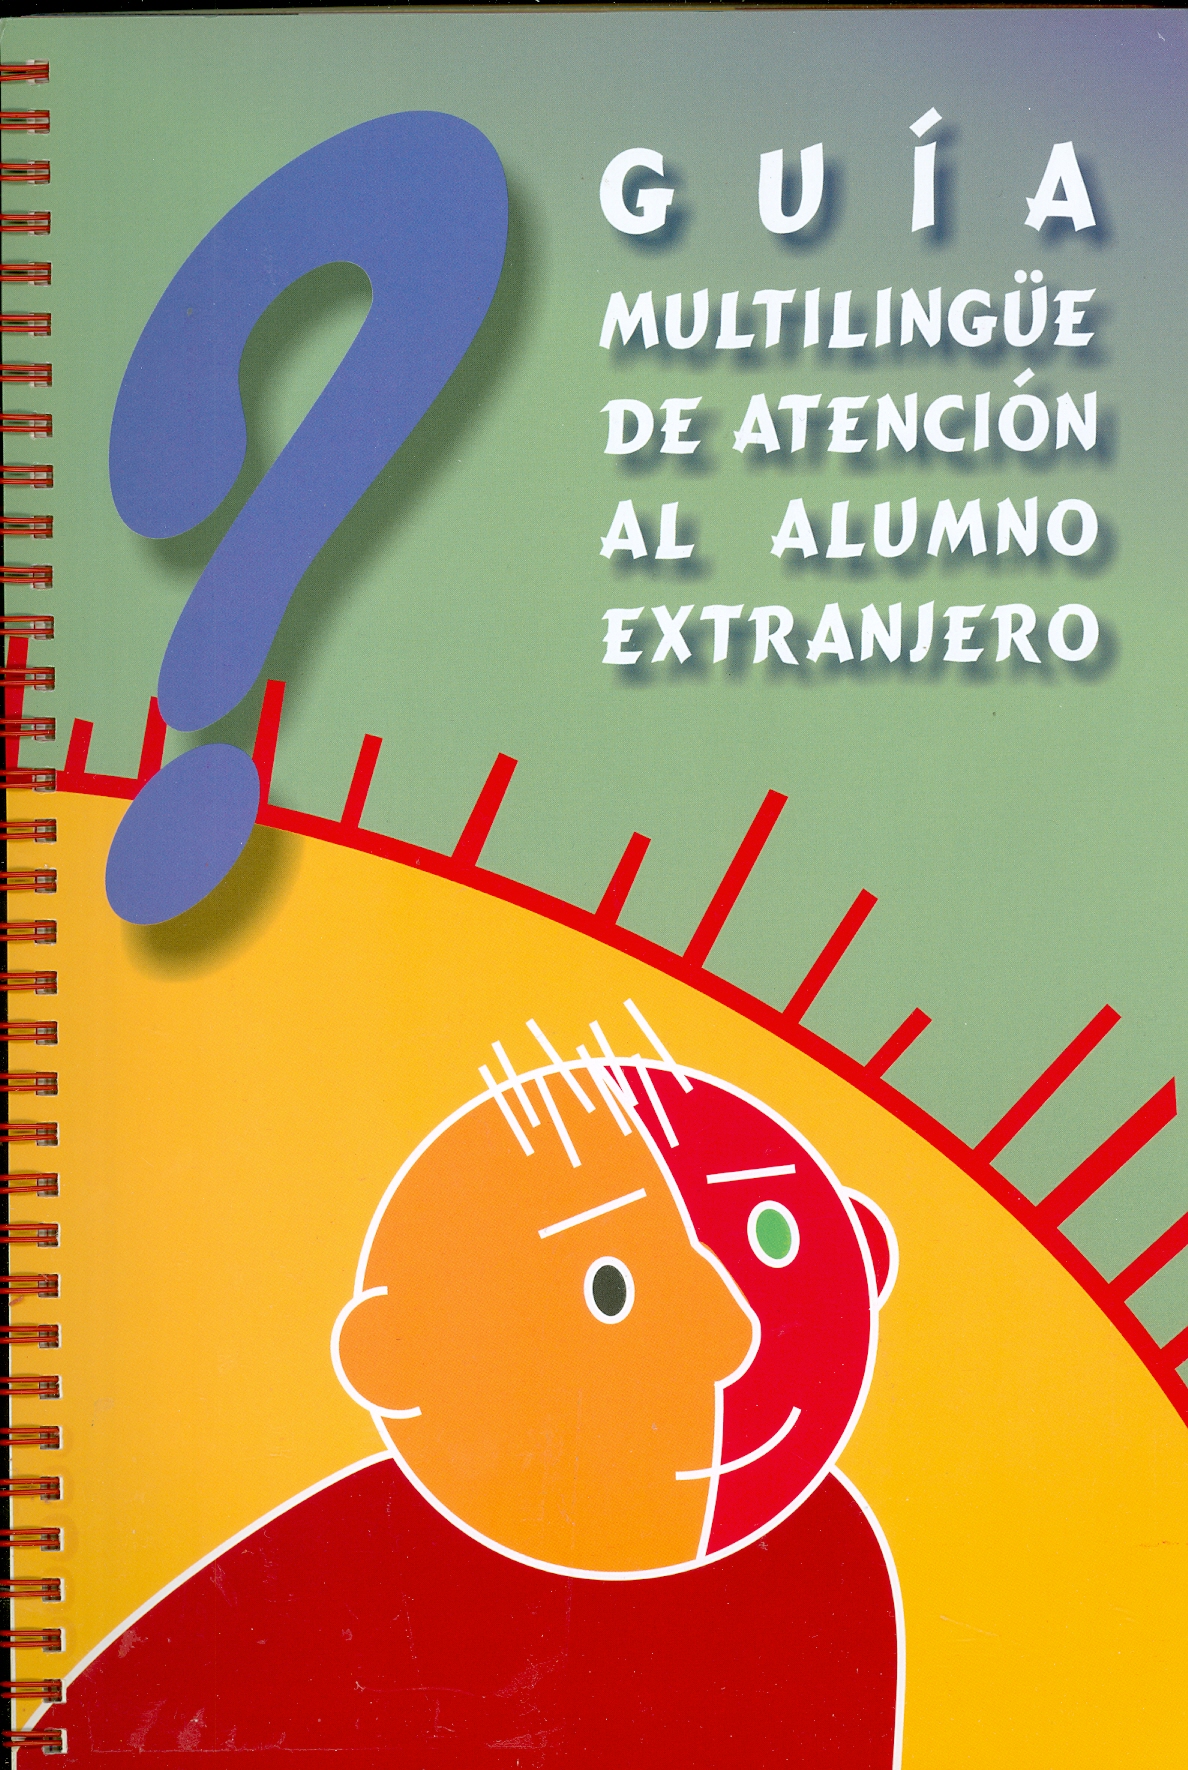 Imagen de portada del libro Guía multilingüe de atención al alumno extranjero en los niveles de primaria y secundaria